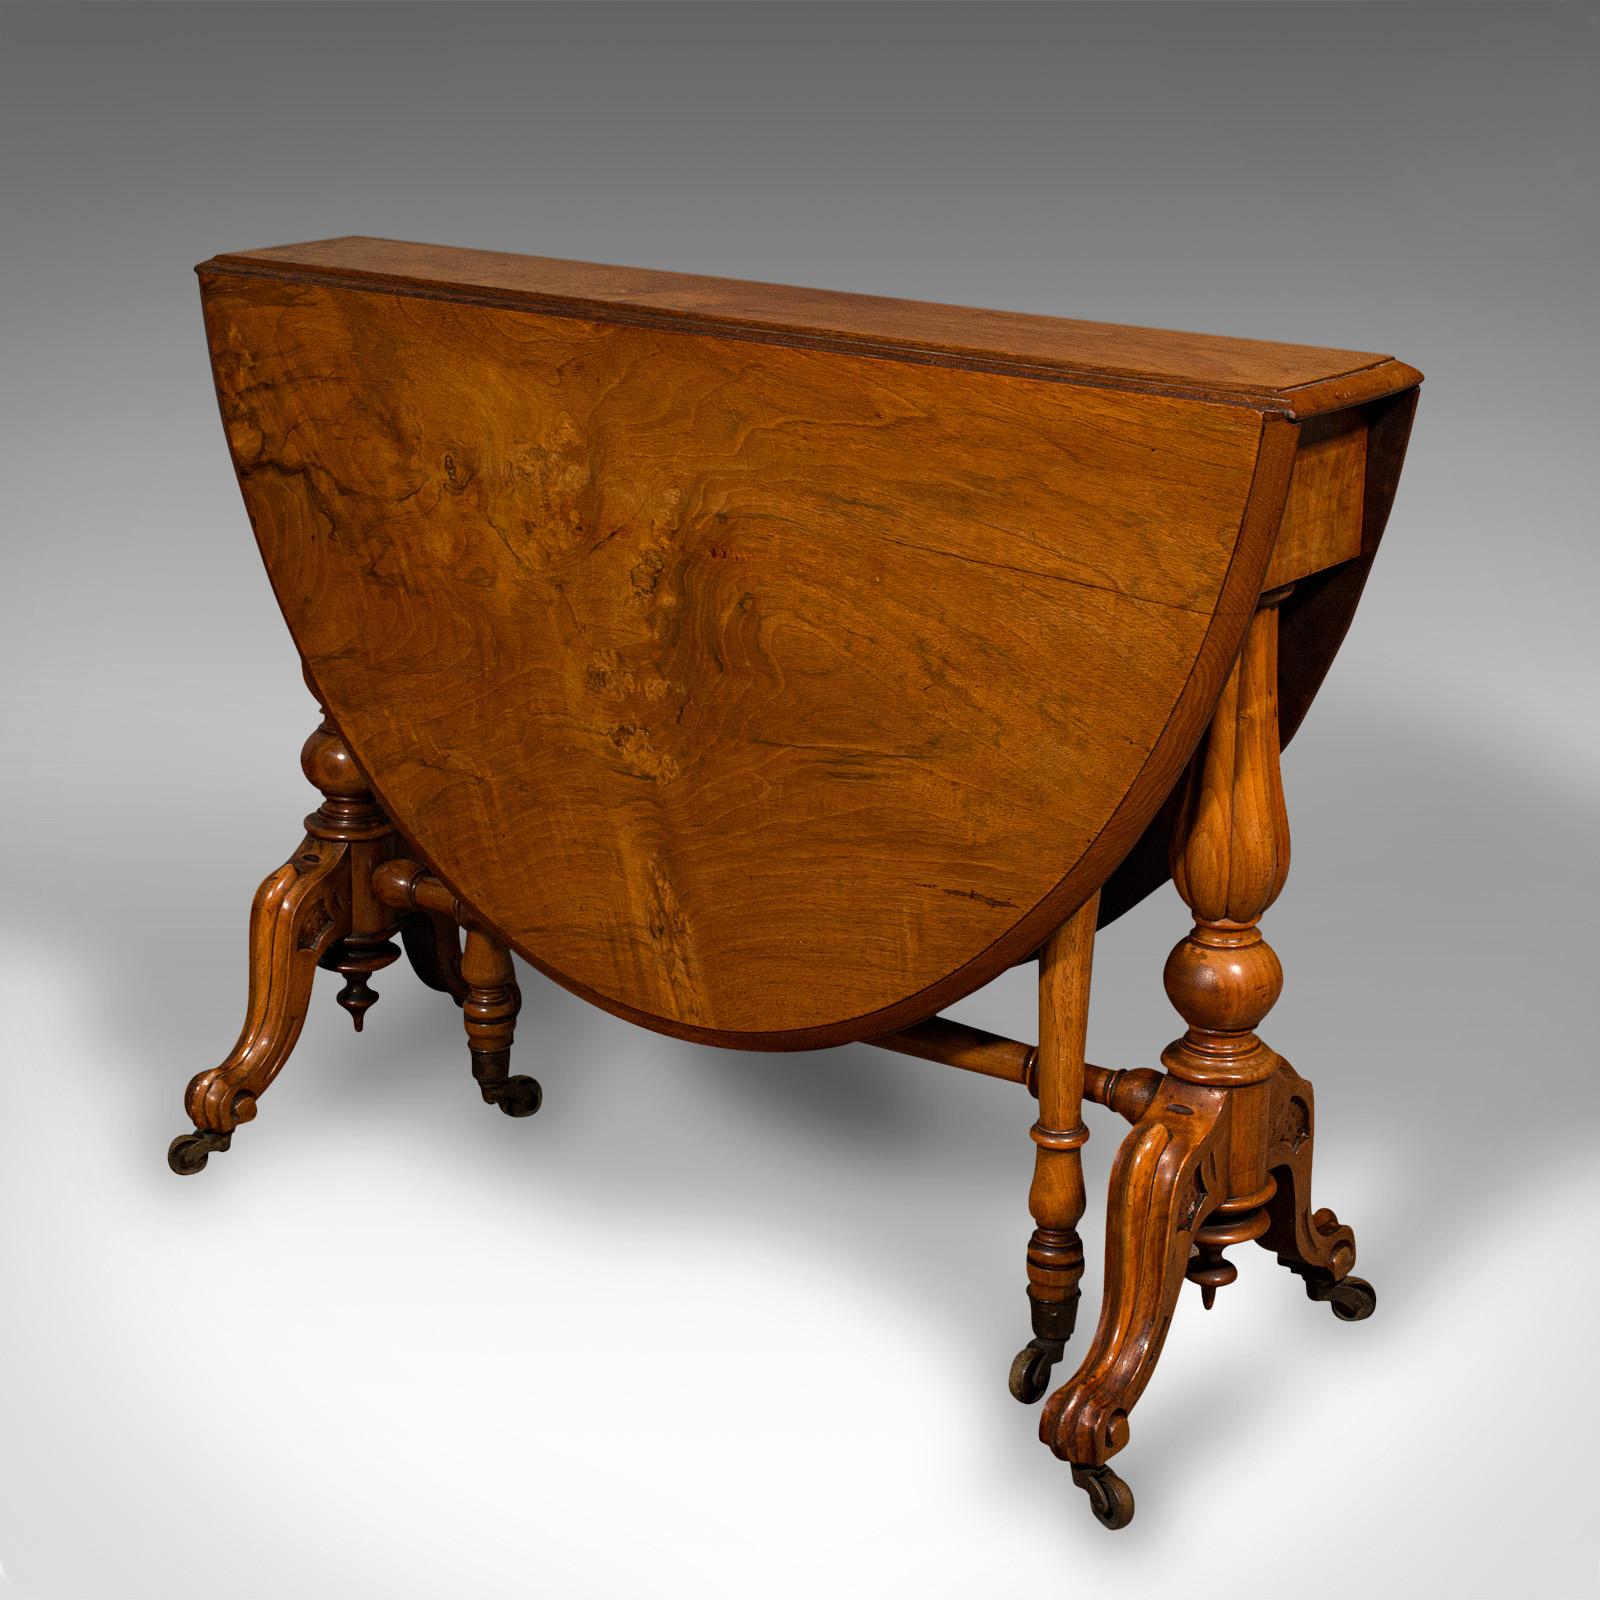 Il s'agit d'une table Sutherland ancienne. Table d'appoint ovale à pieds en ronce de noyer, datant du début de la période victorienne, vers 1850.

Riches en couleurs et d'une grande finesse artisanale
Présente une patine d'usage désirable et est en